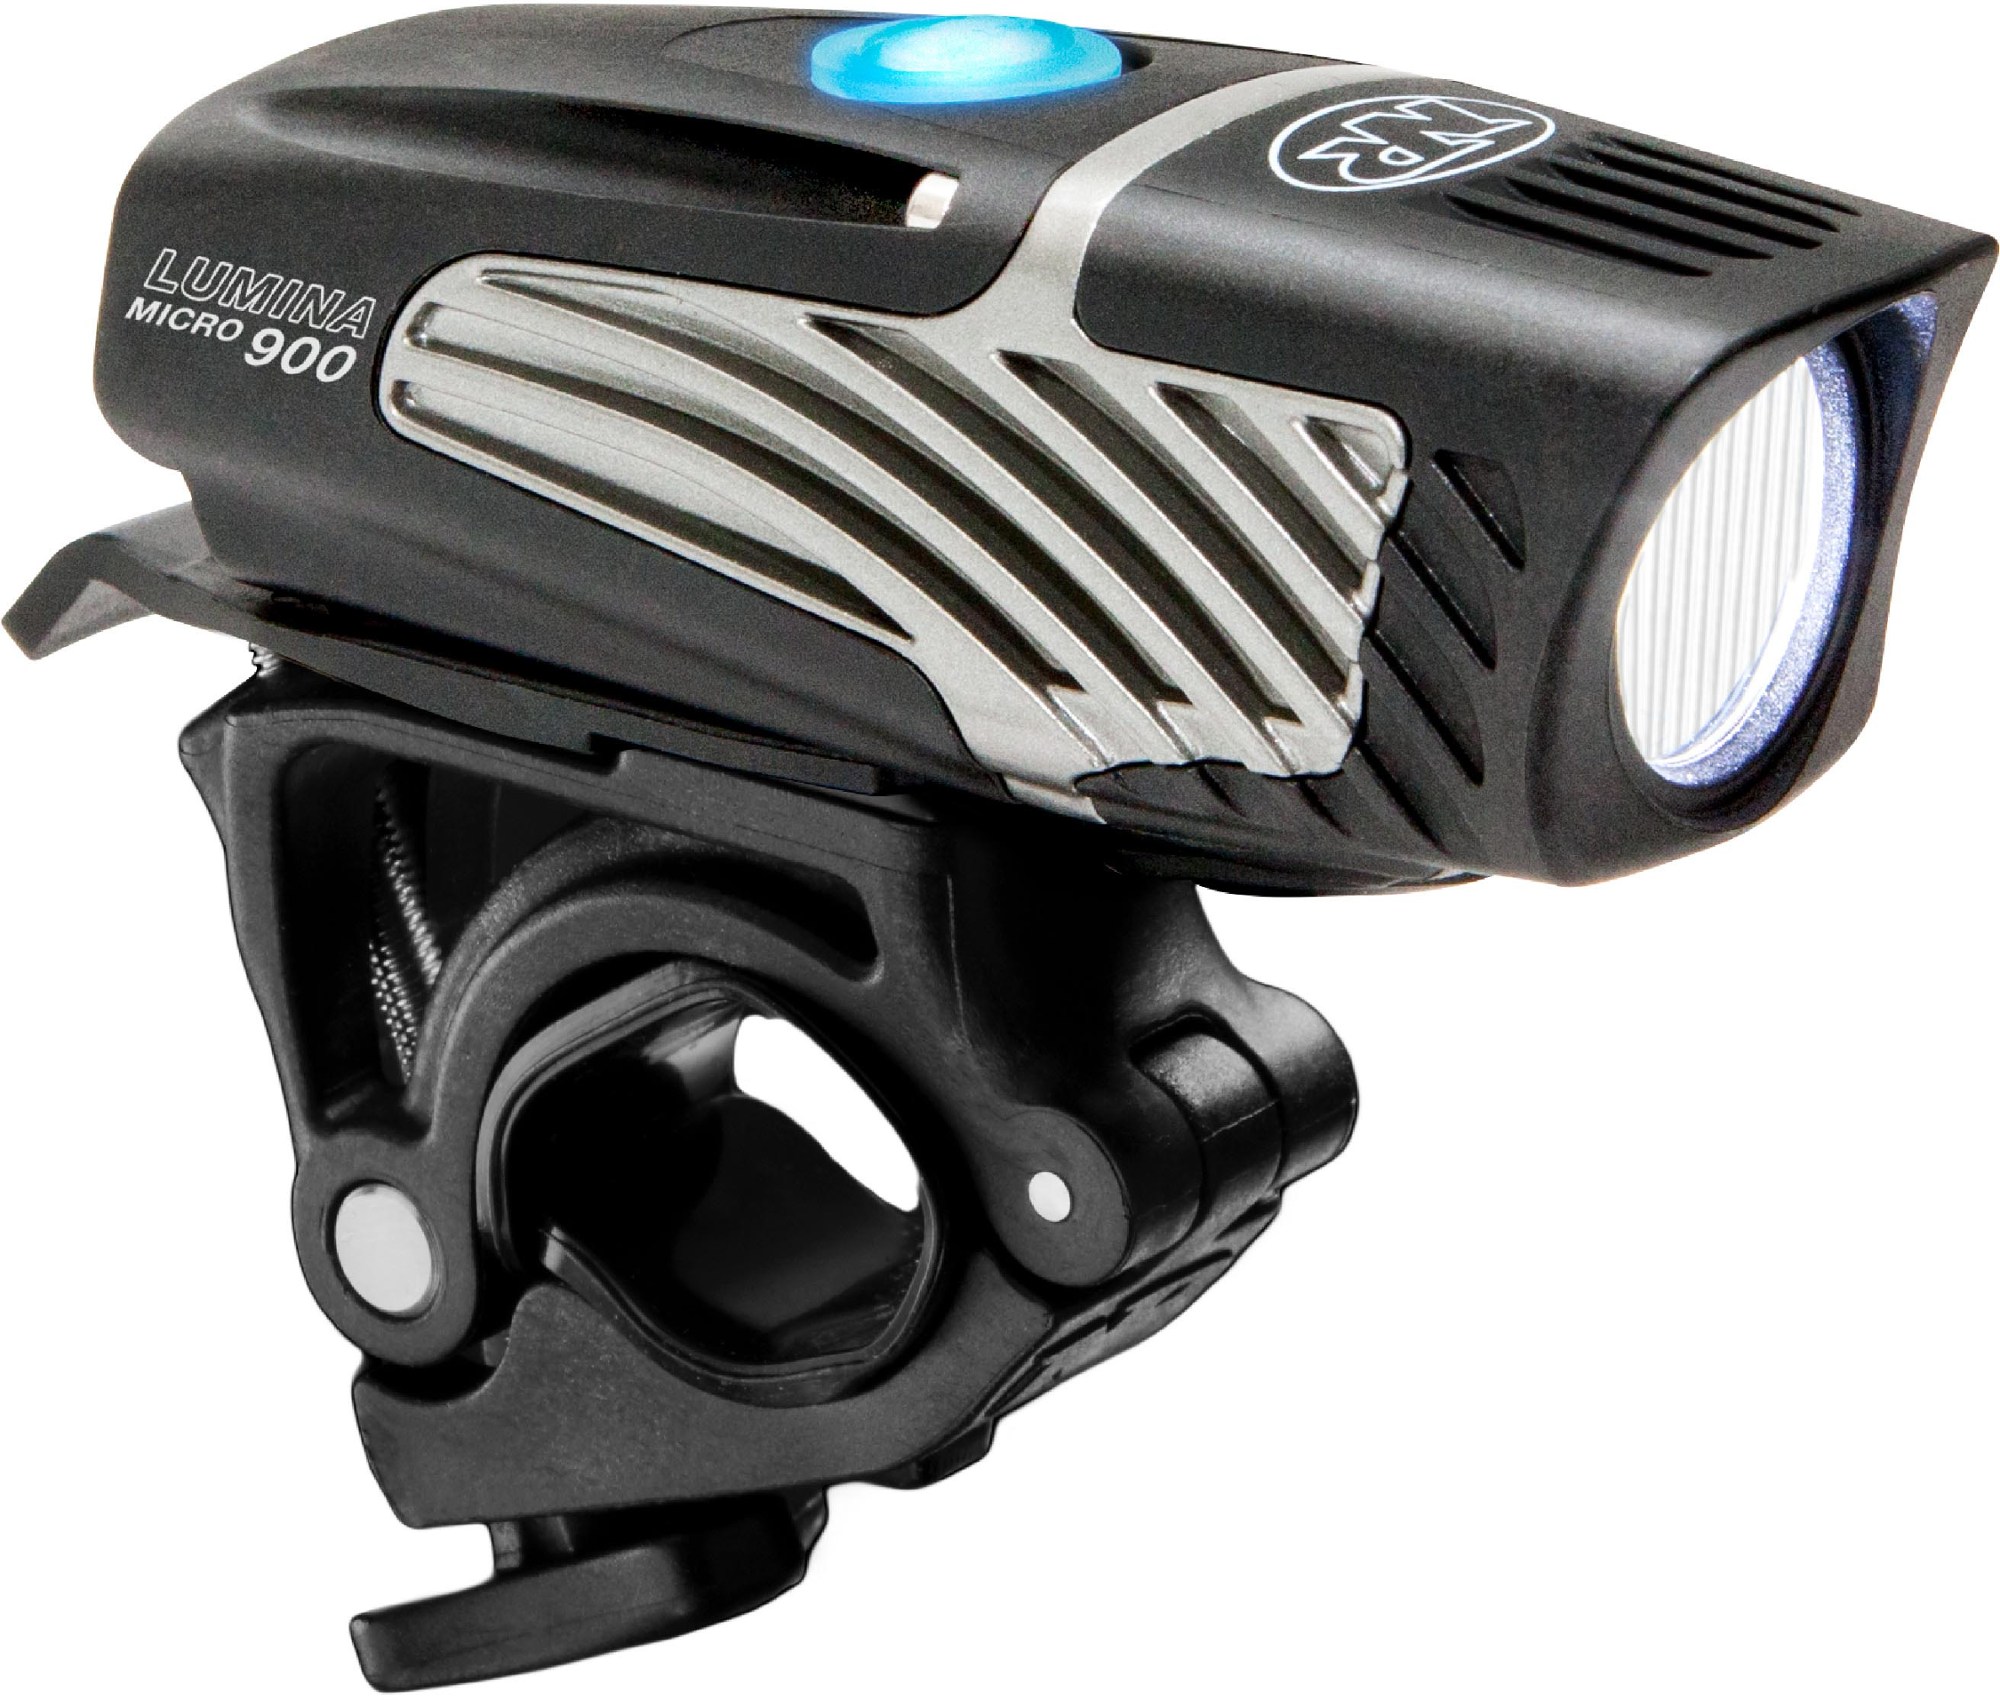 цена Передний велосипедный фонарь Lumina Micro 900 NiteRider